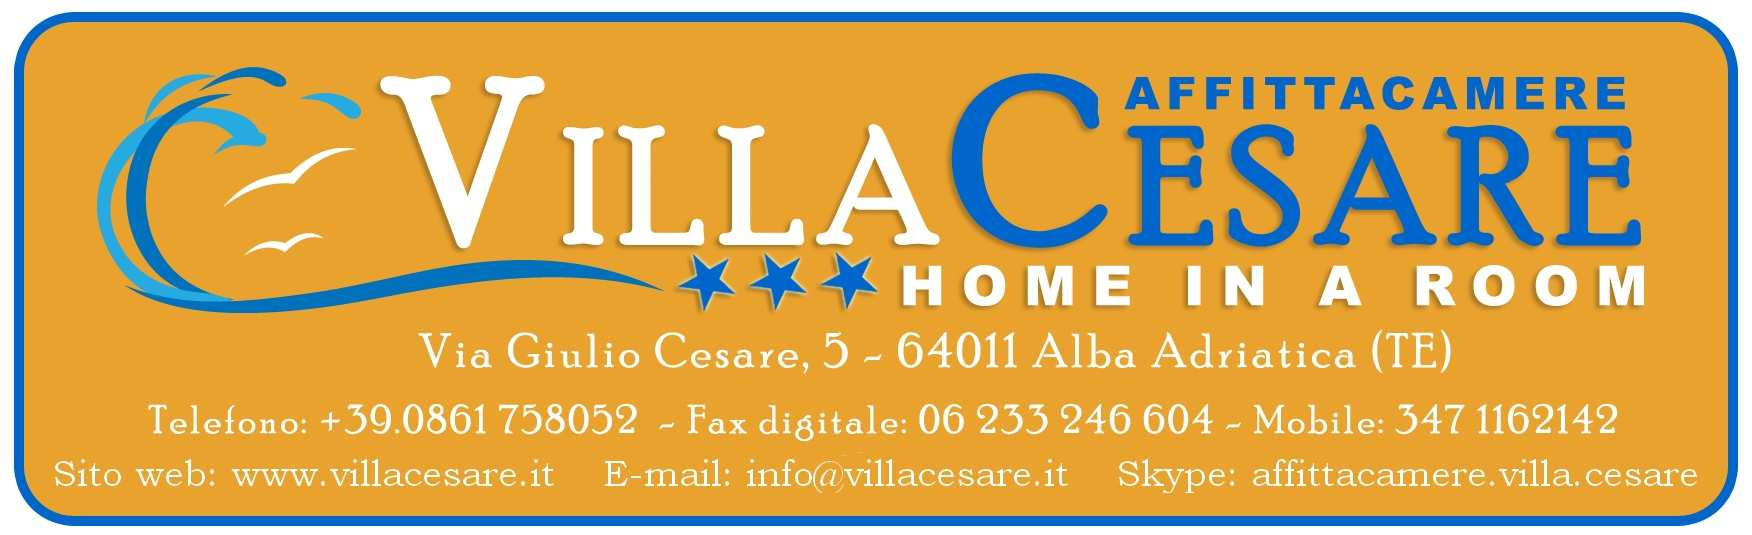 Clicca sul logo sotto per accedere al sito www.villacesare.